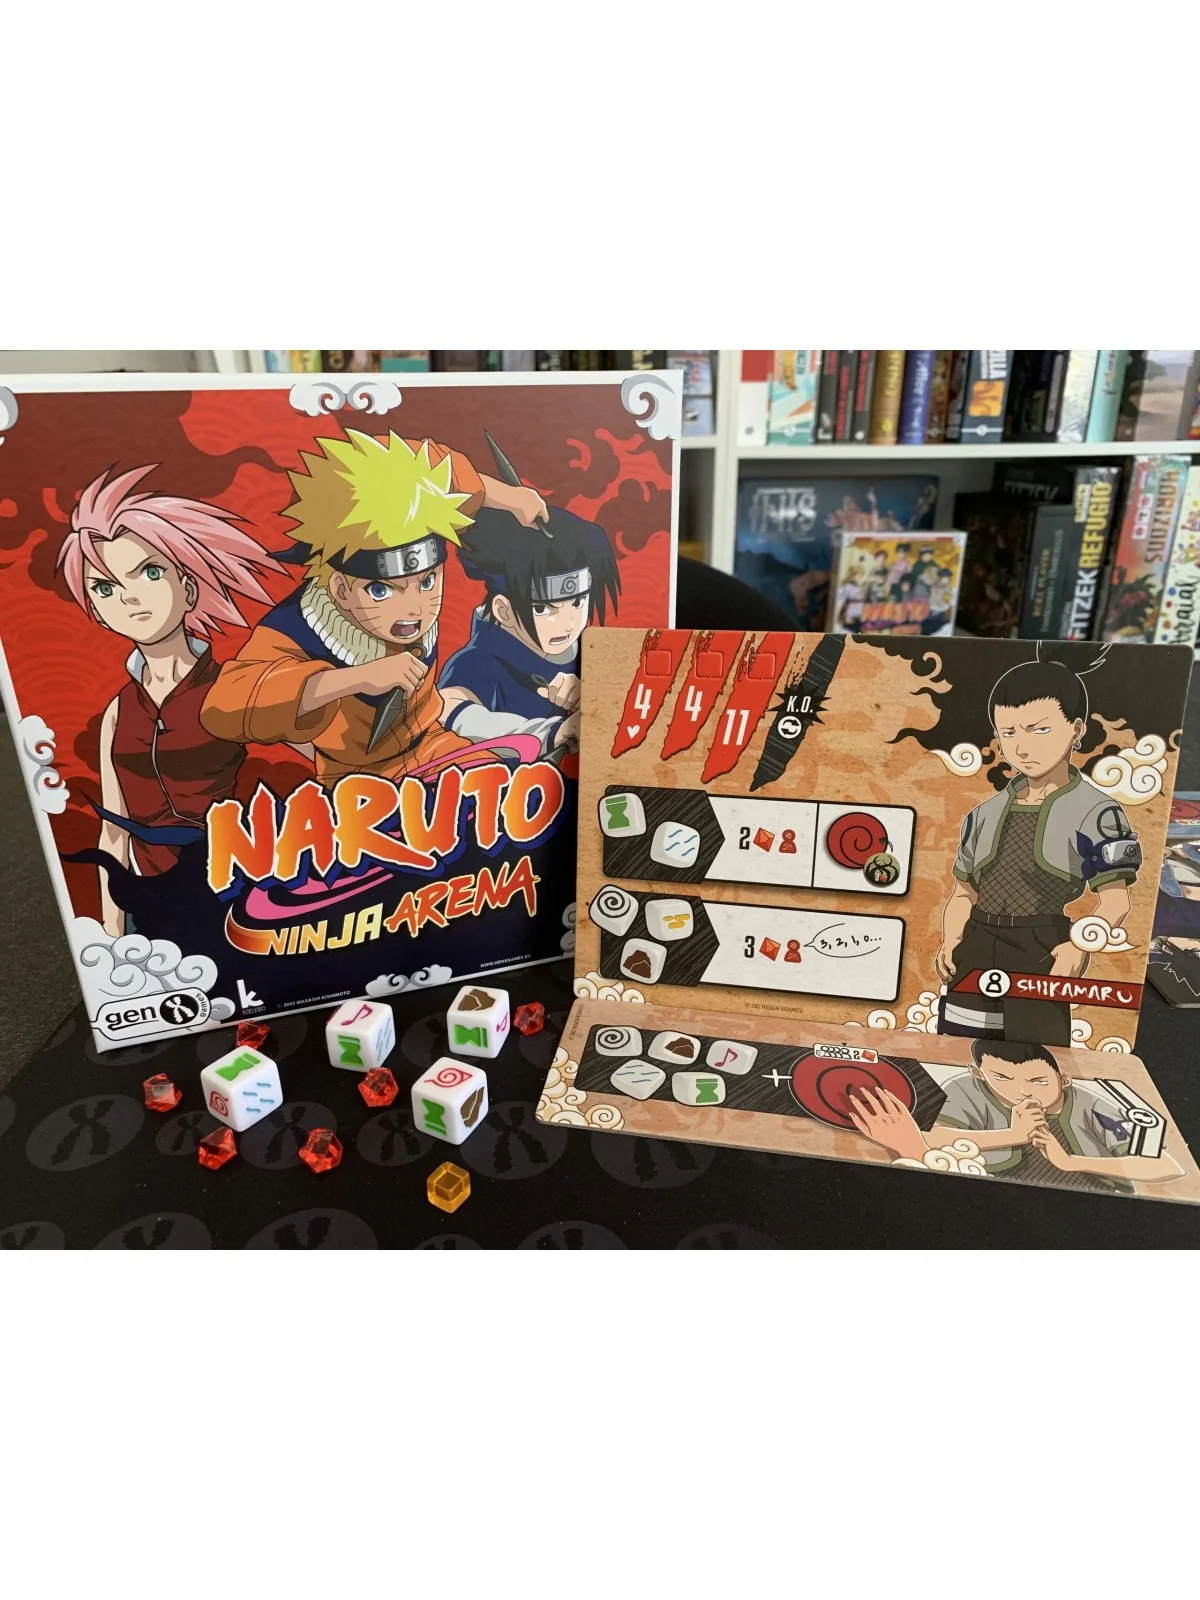 Comprar Naruto Ninja Arena Expansión Pack Grado Inferior barato al mej